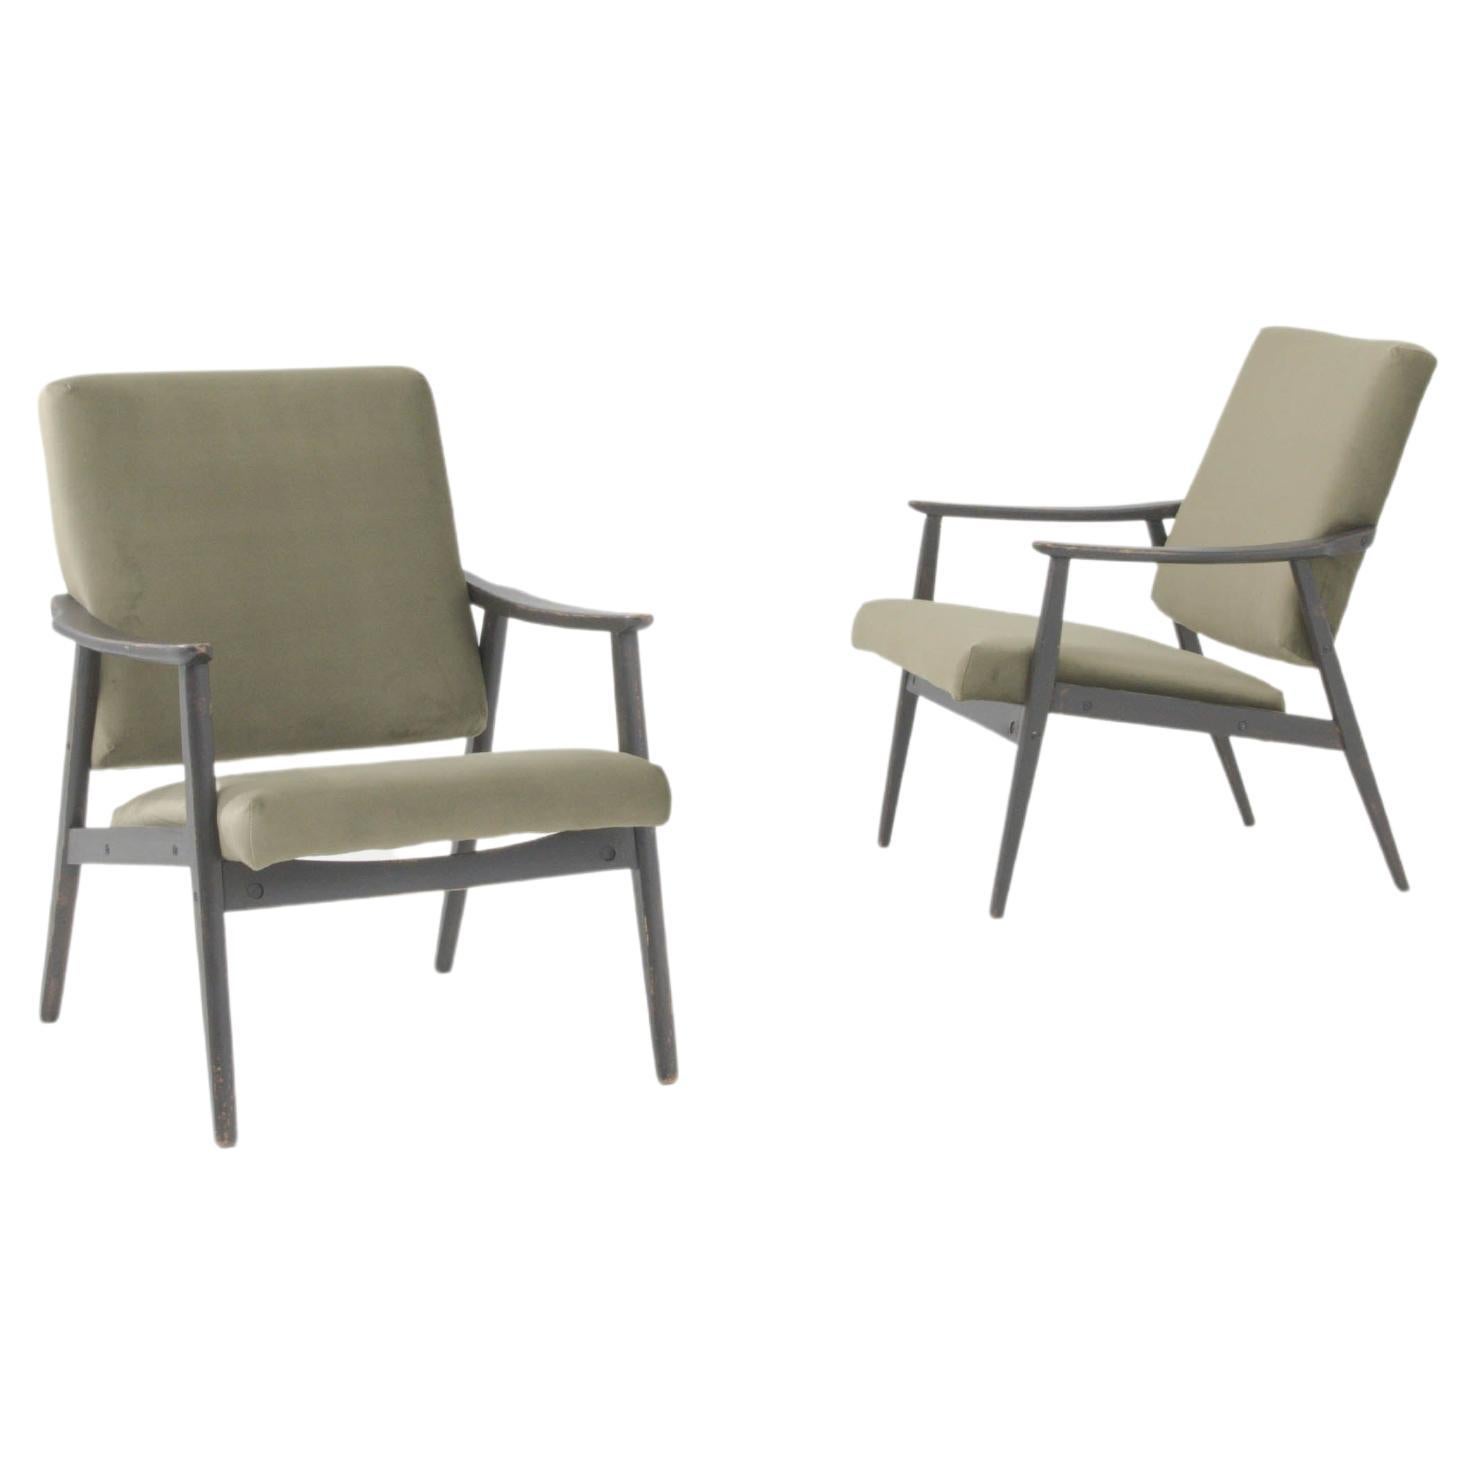 1960s Czechia Pair of Upholstered Armchairs (Paire de fauteuils tapissés)